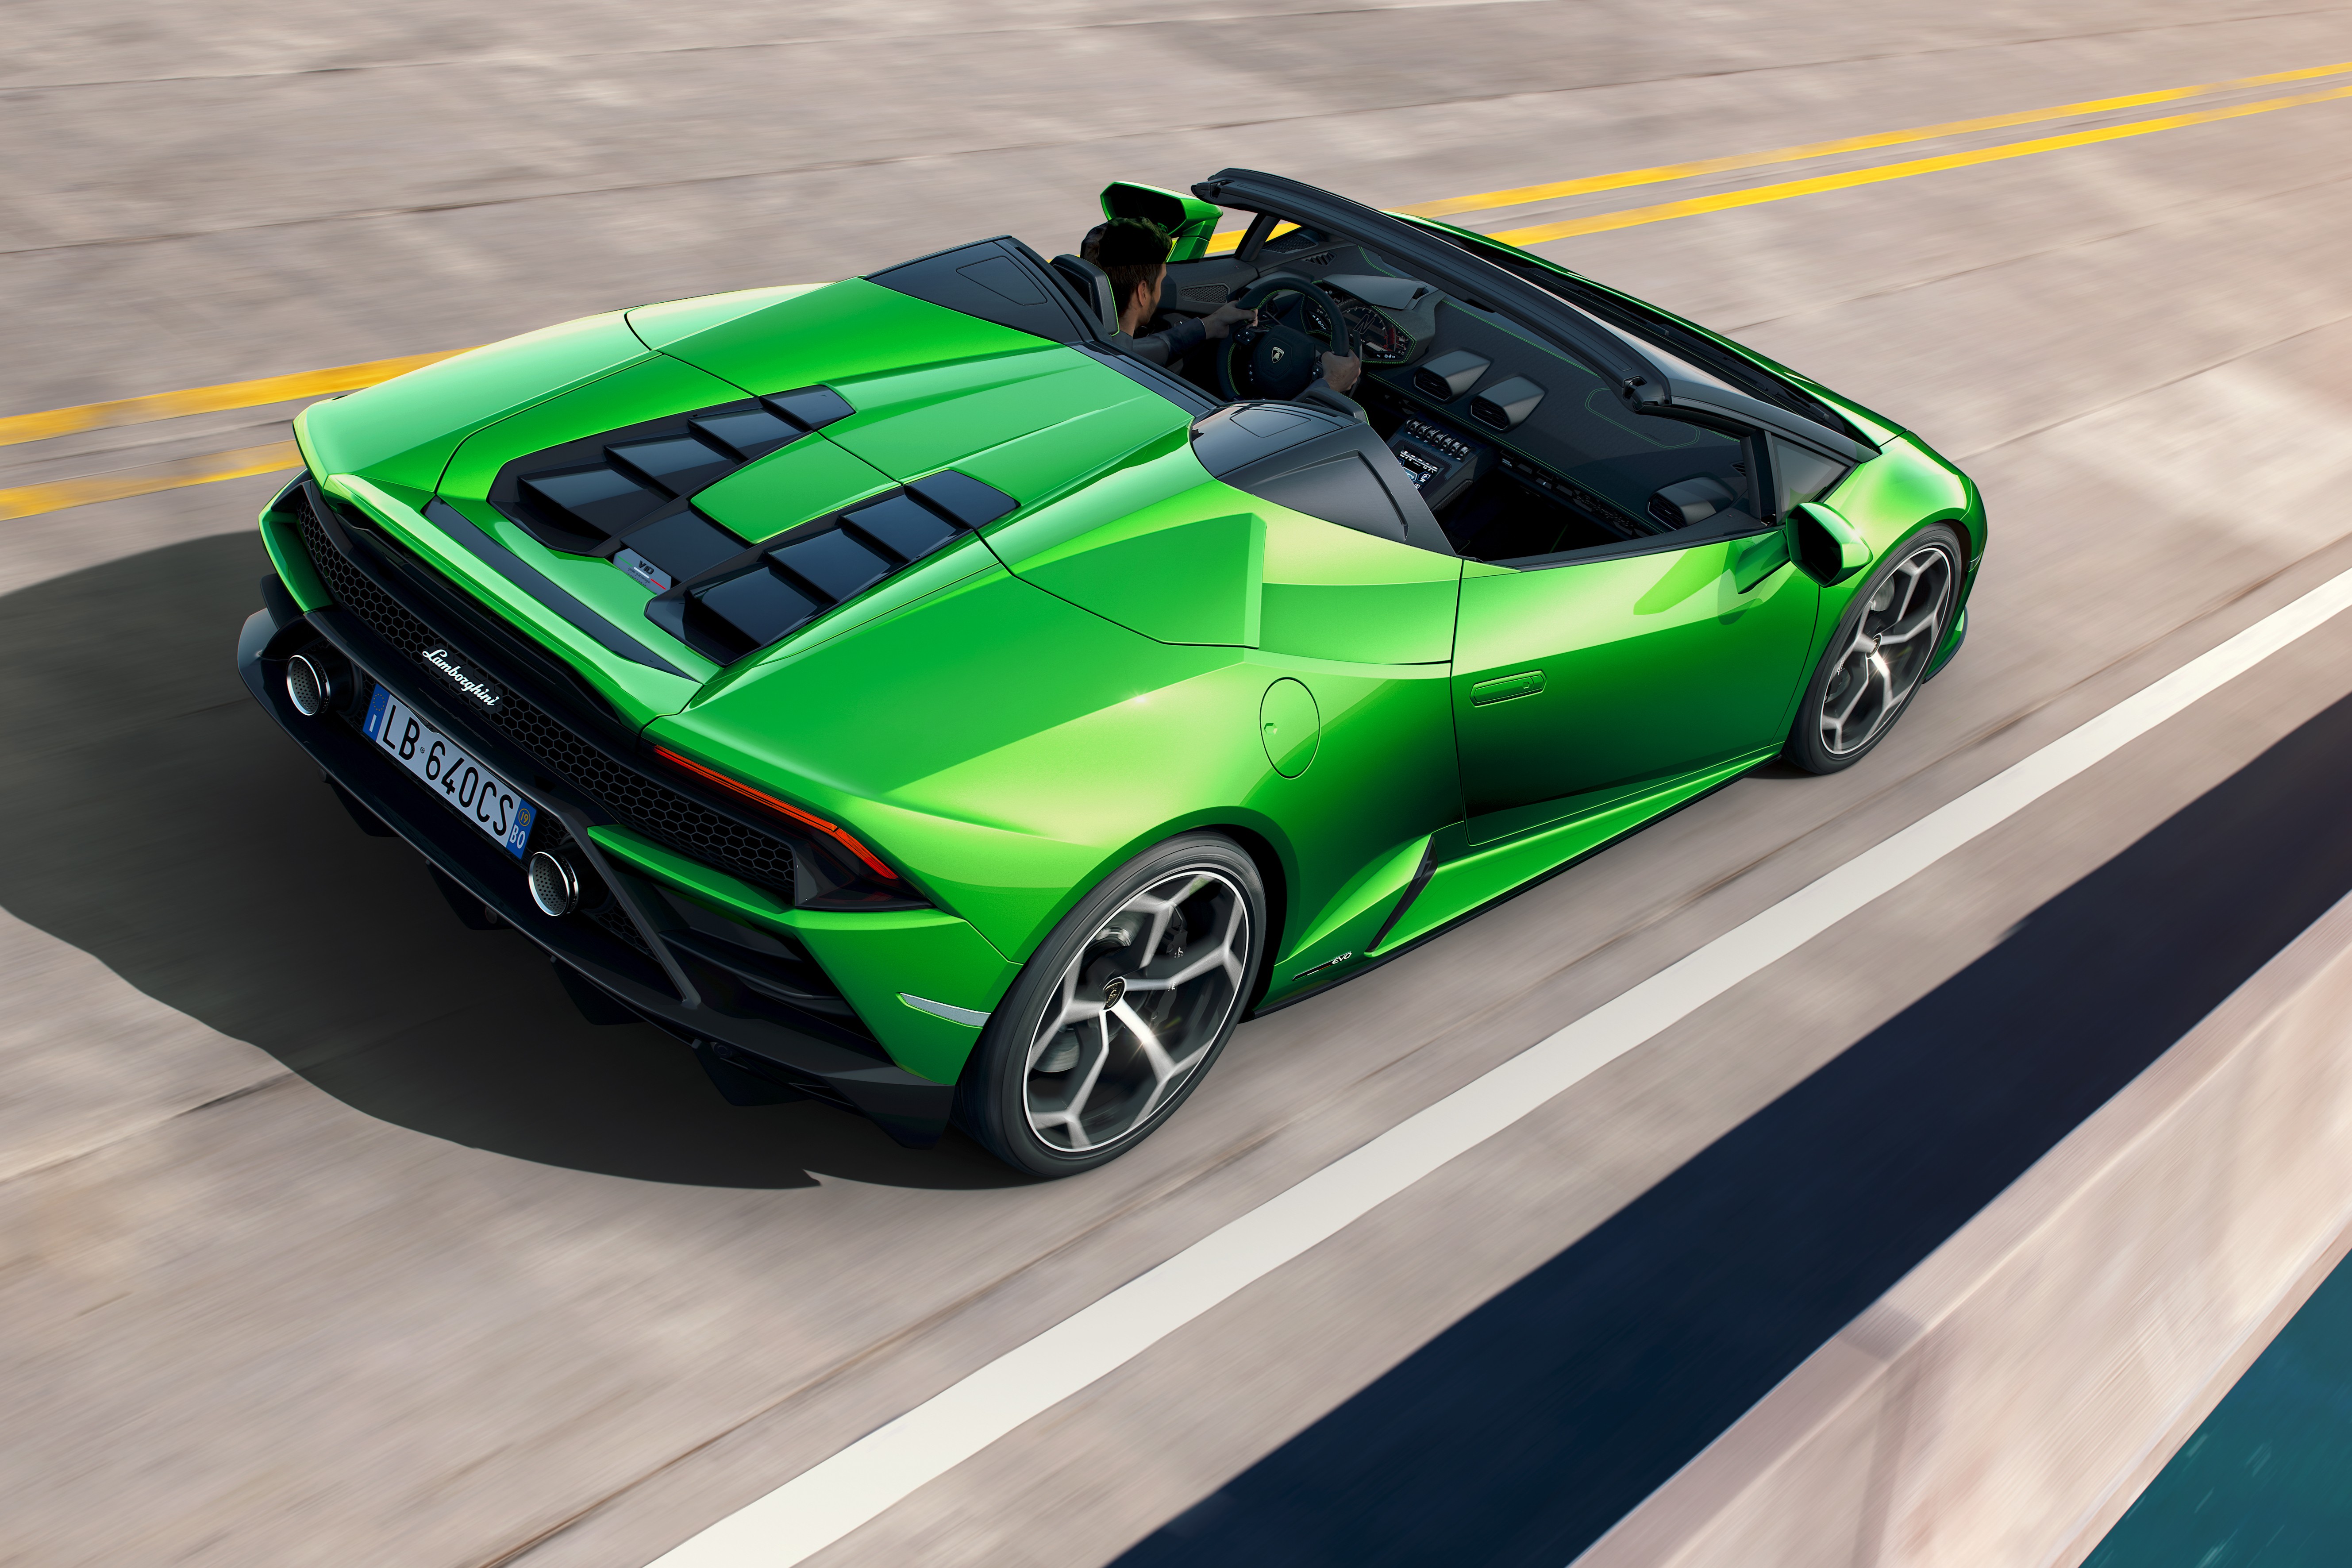 Green Lamborghini - Is this a Sterrato? : r/namethatcar